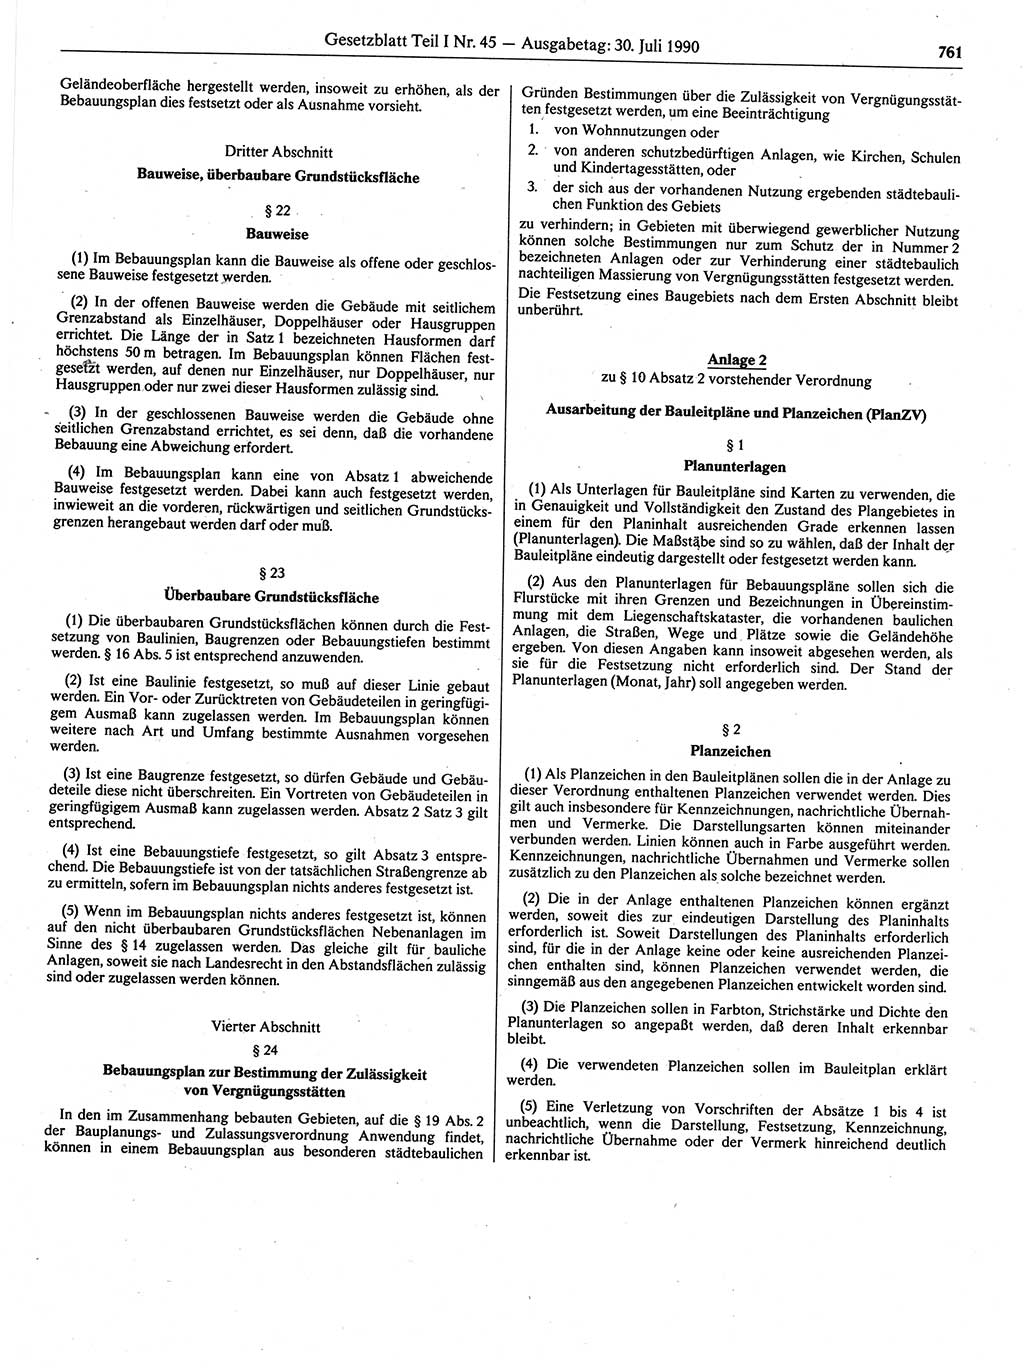 Gesetzblatt (GBl.) der Deutschen Demokratischen Republik (DDR) Teil Ⅰ 1990, Seite 761 (GBl. DDR Ⅰ 1990, S. 761)